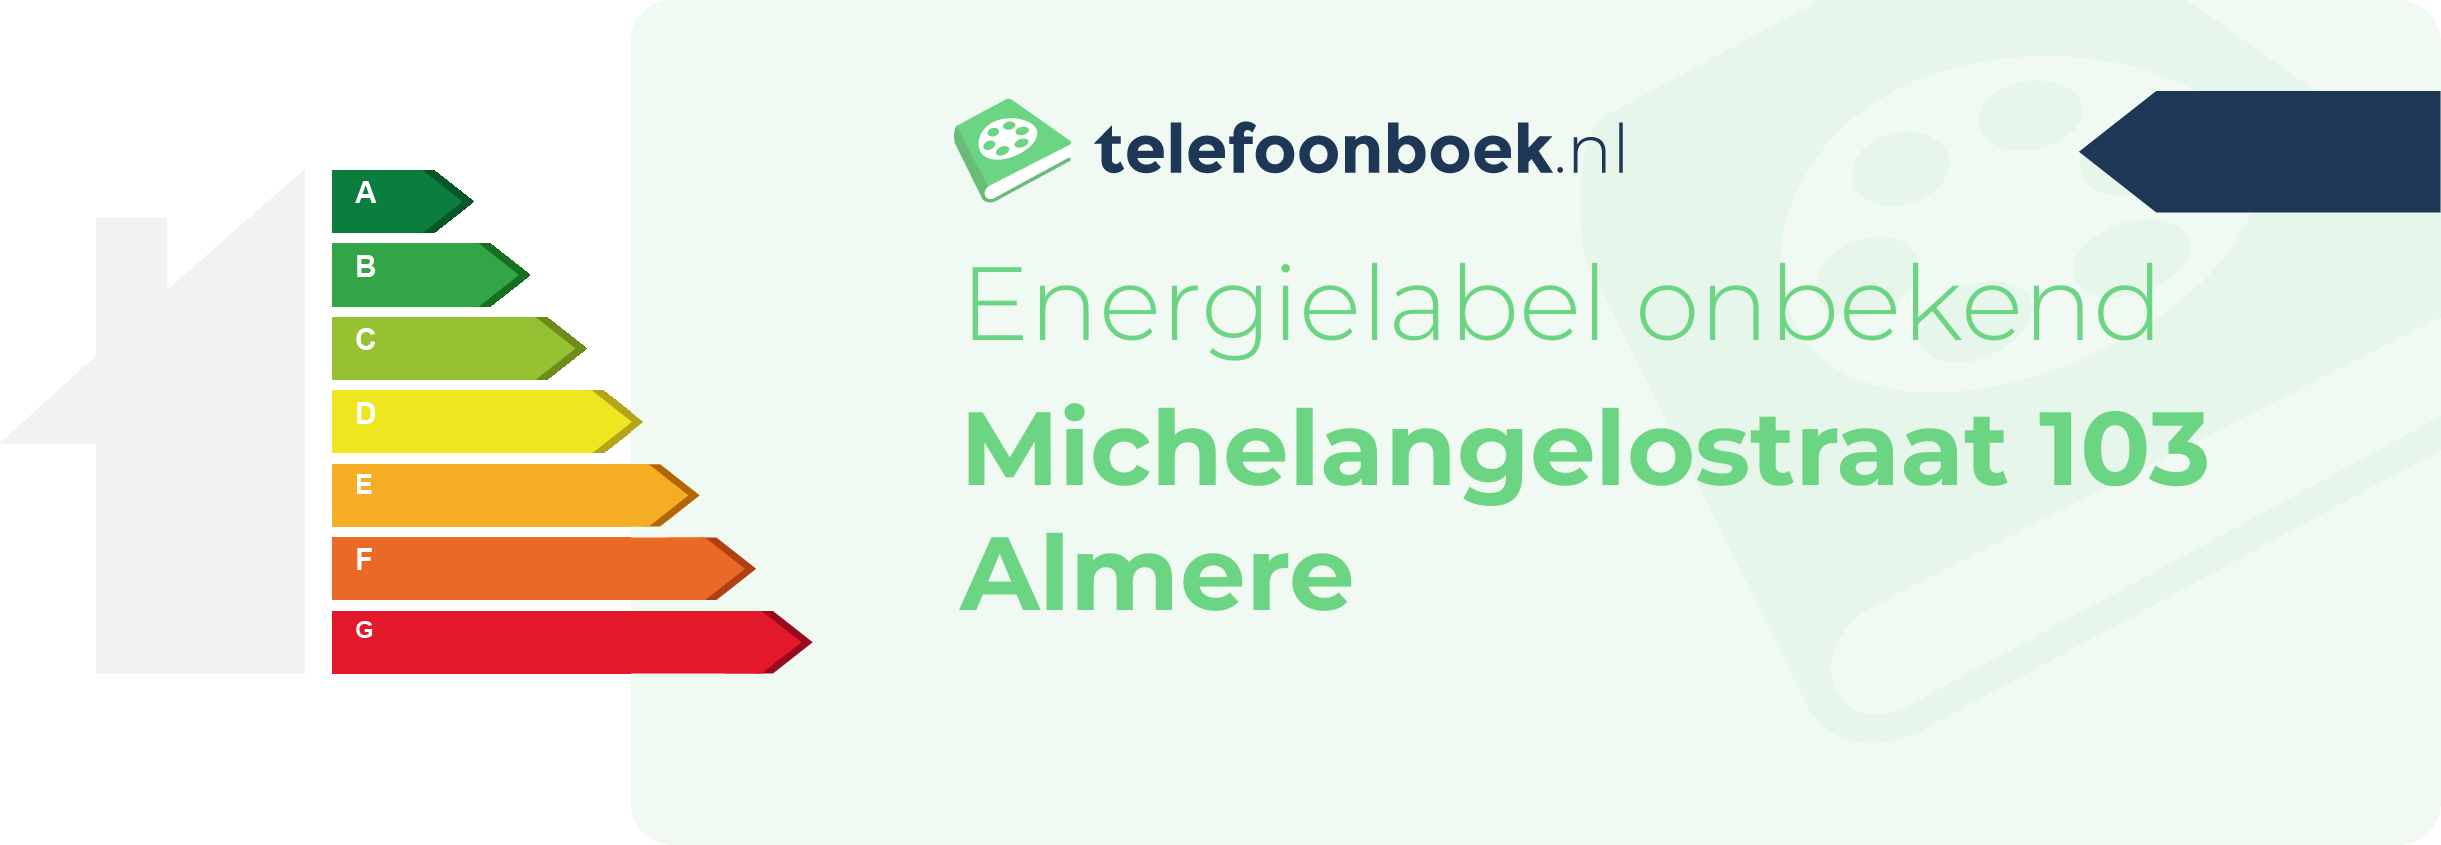 Energielabel Michelangelostraat 103 Almere